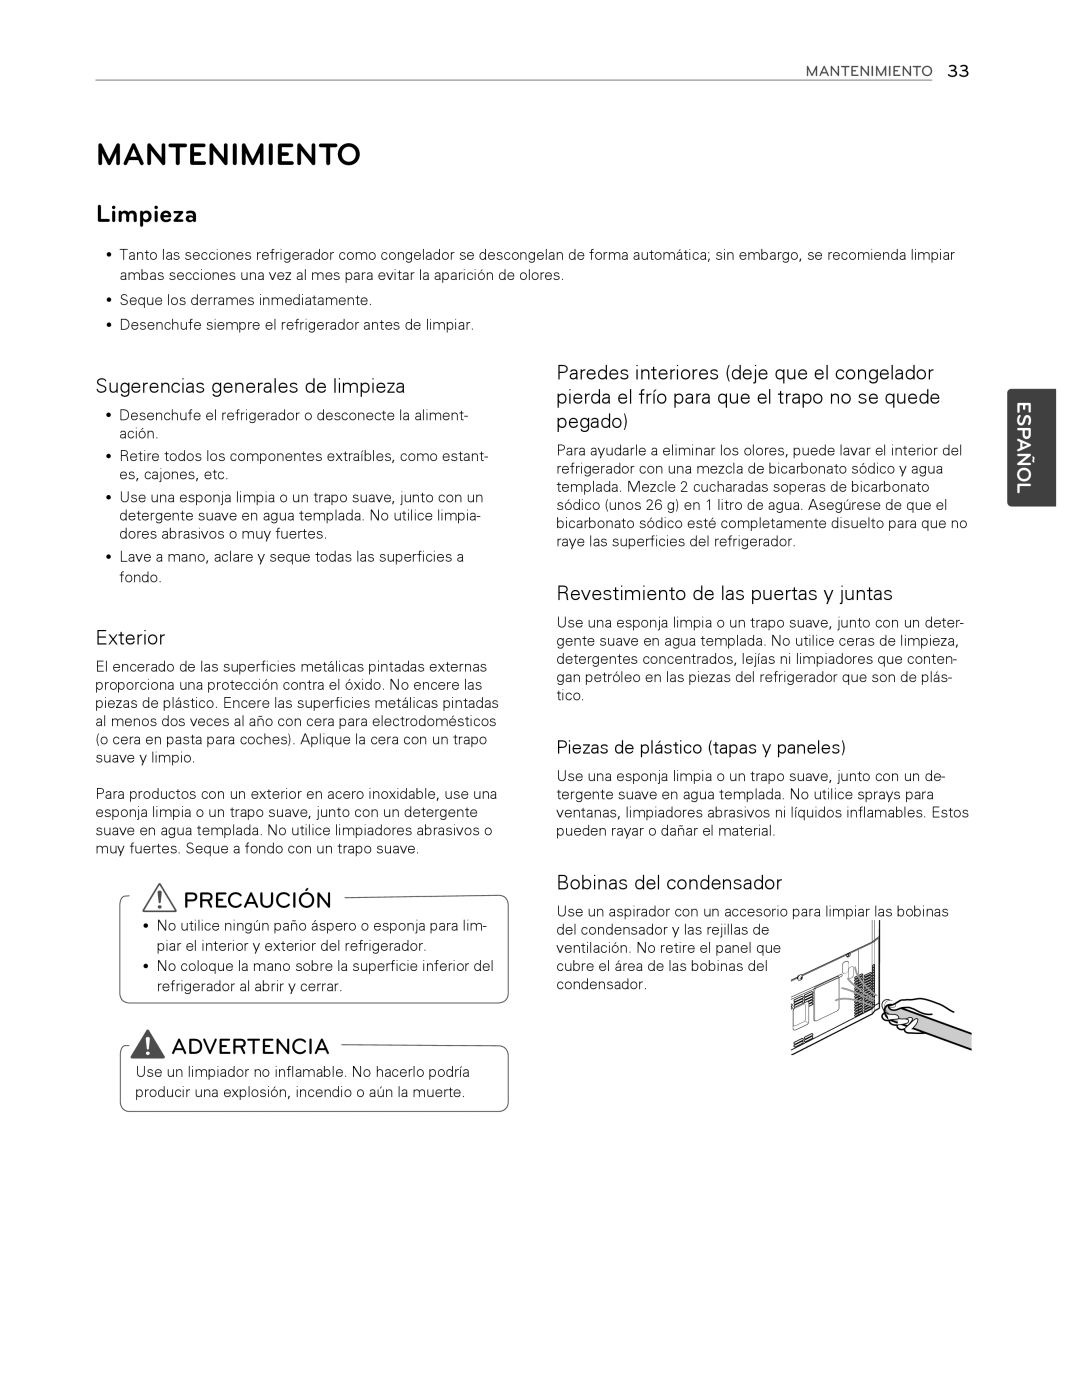 LG Electronics LFX25974ST Mantenimiento, Precaución, Advertencia, Sugerencias generales de limpieza, Exterior, Español 